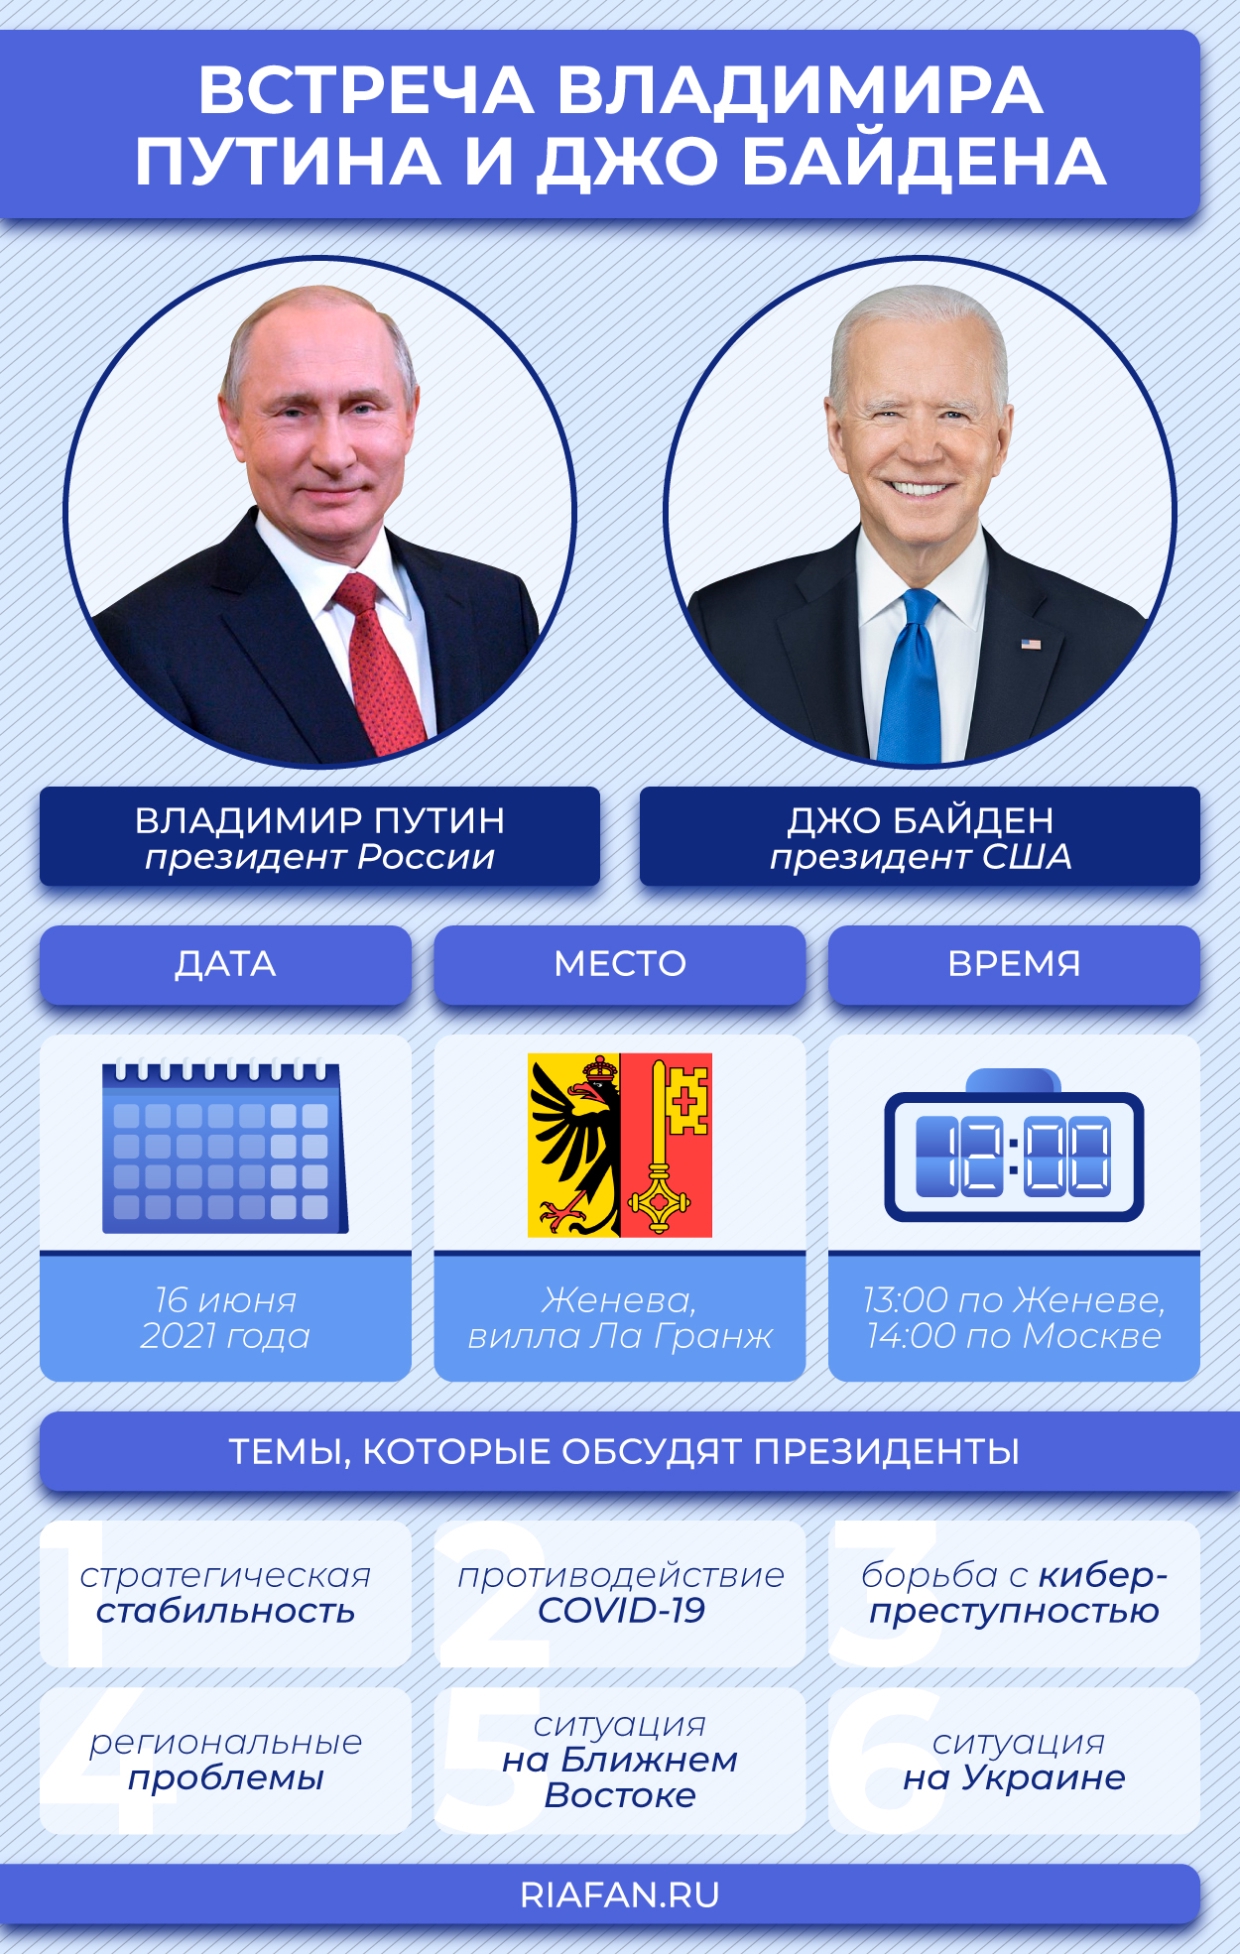 «Посмотреть в глаза»: Онищенко сделал прогноз по встрече Путина с Байденом